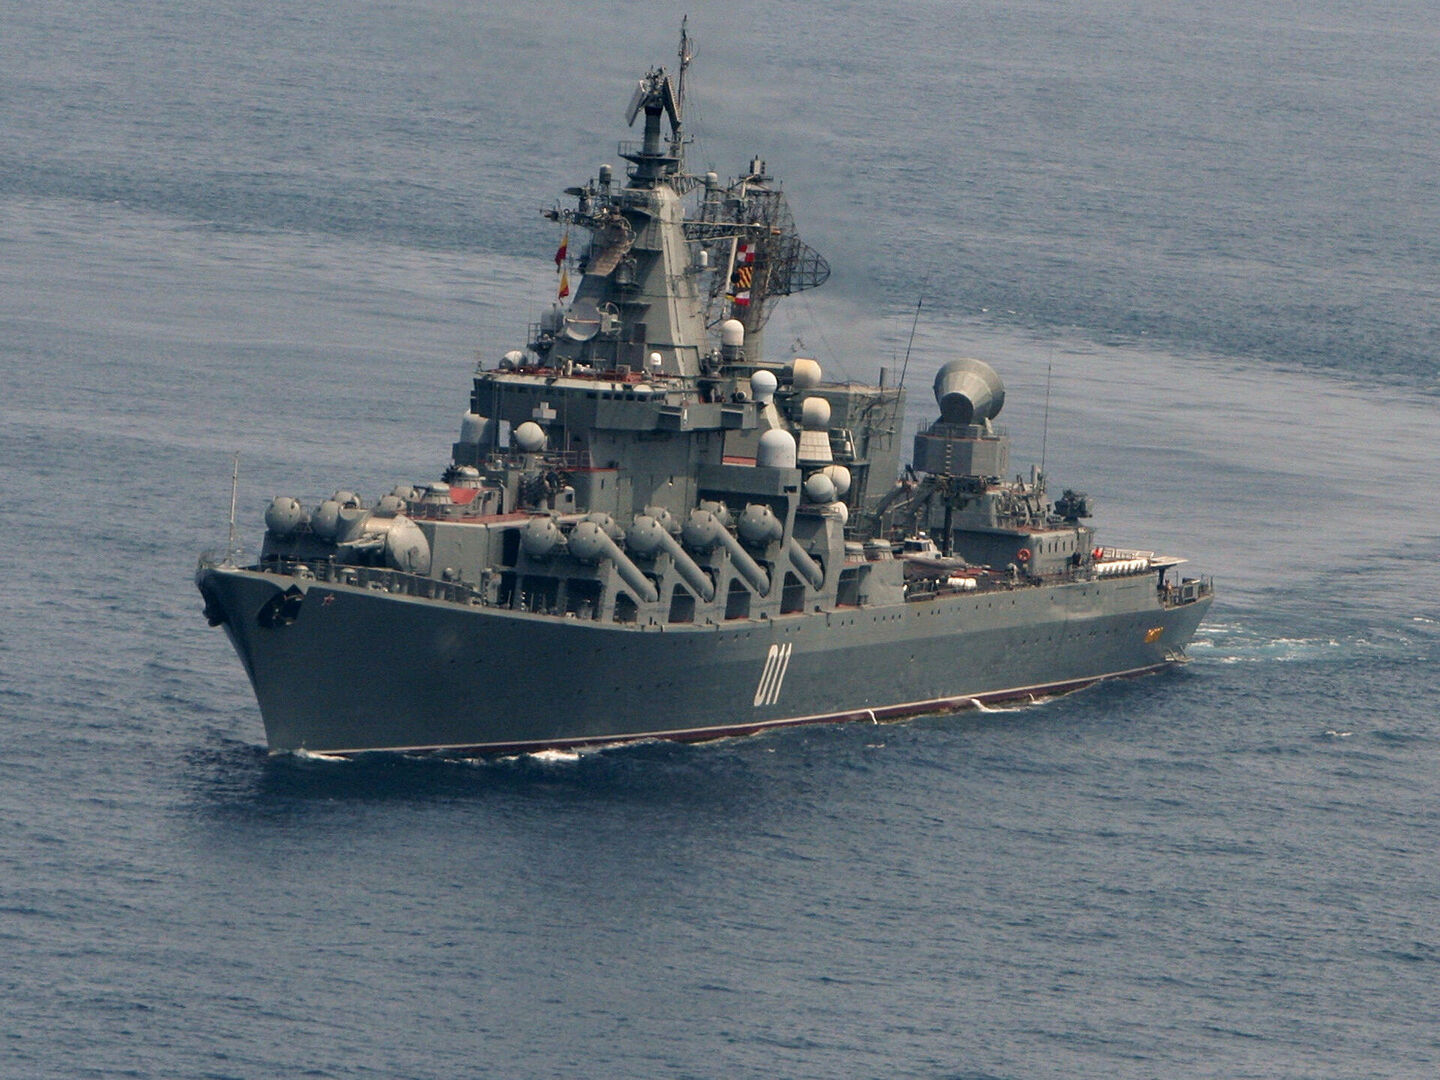 روسيا والصين وإيران ستجري تدريبات عسكرية مشتركة في خليج عمان